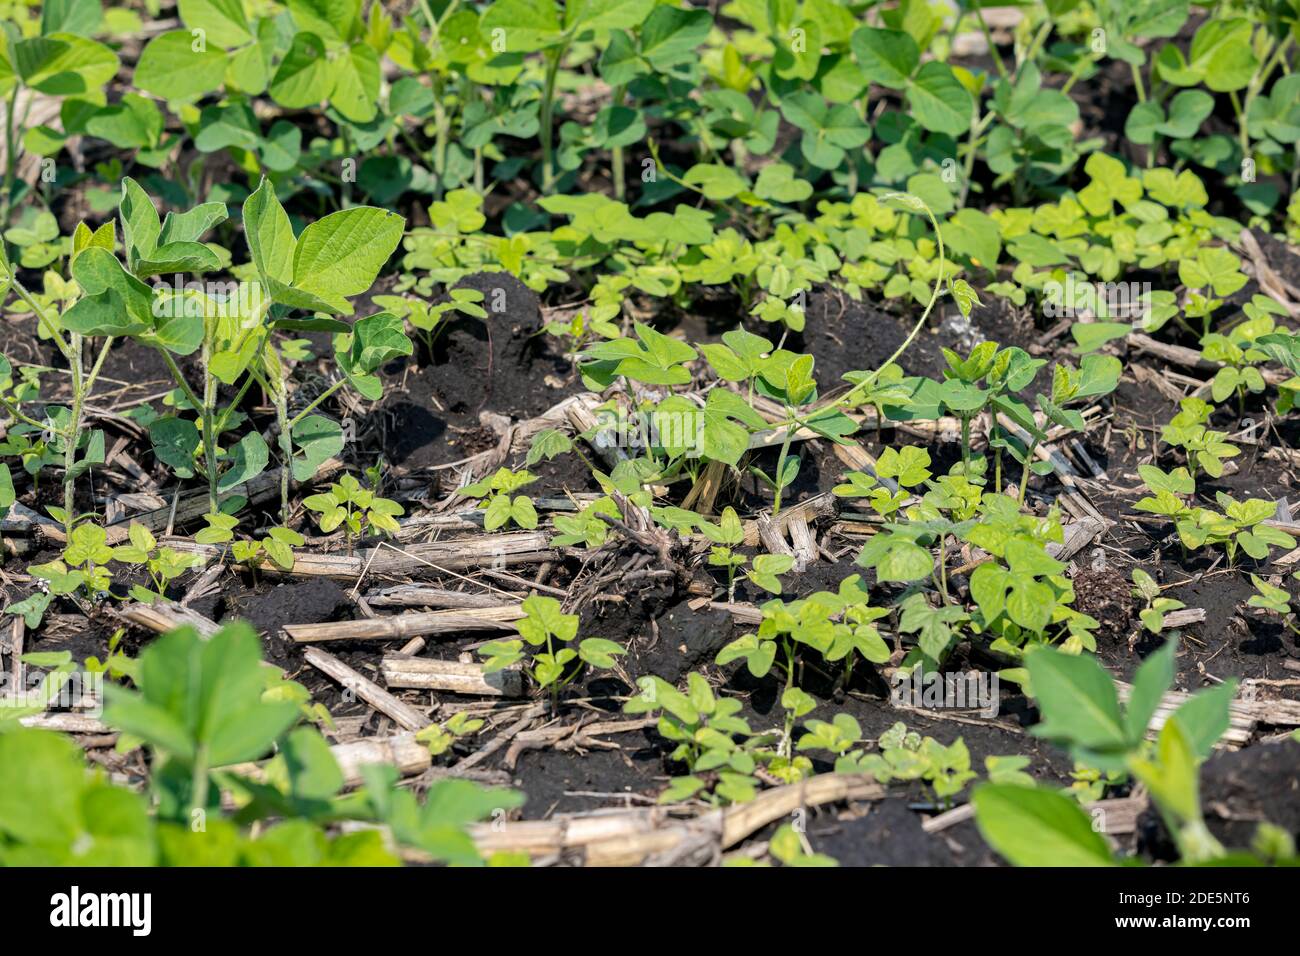 Efeu-Blatt Morgen Glory Weintraube wächst in Reihen von Sojabohnen Feld. Konzept der landwirtschaftlichen Unkrautbekämpfung und Management mit Herbizid und Anbau Stockfoto